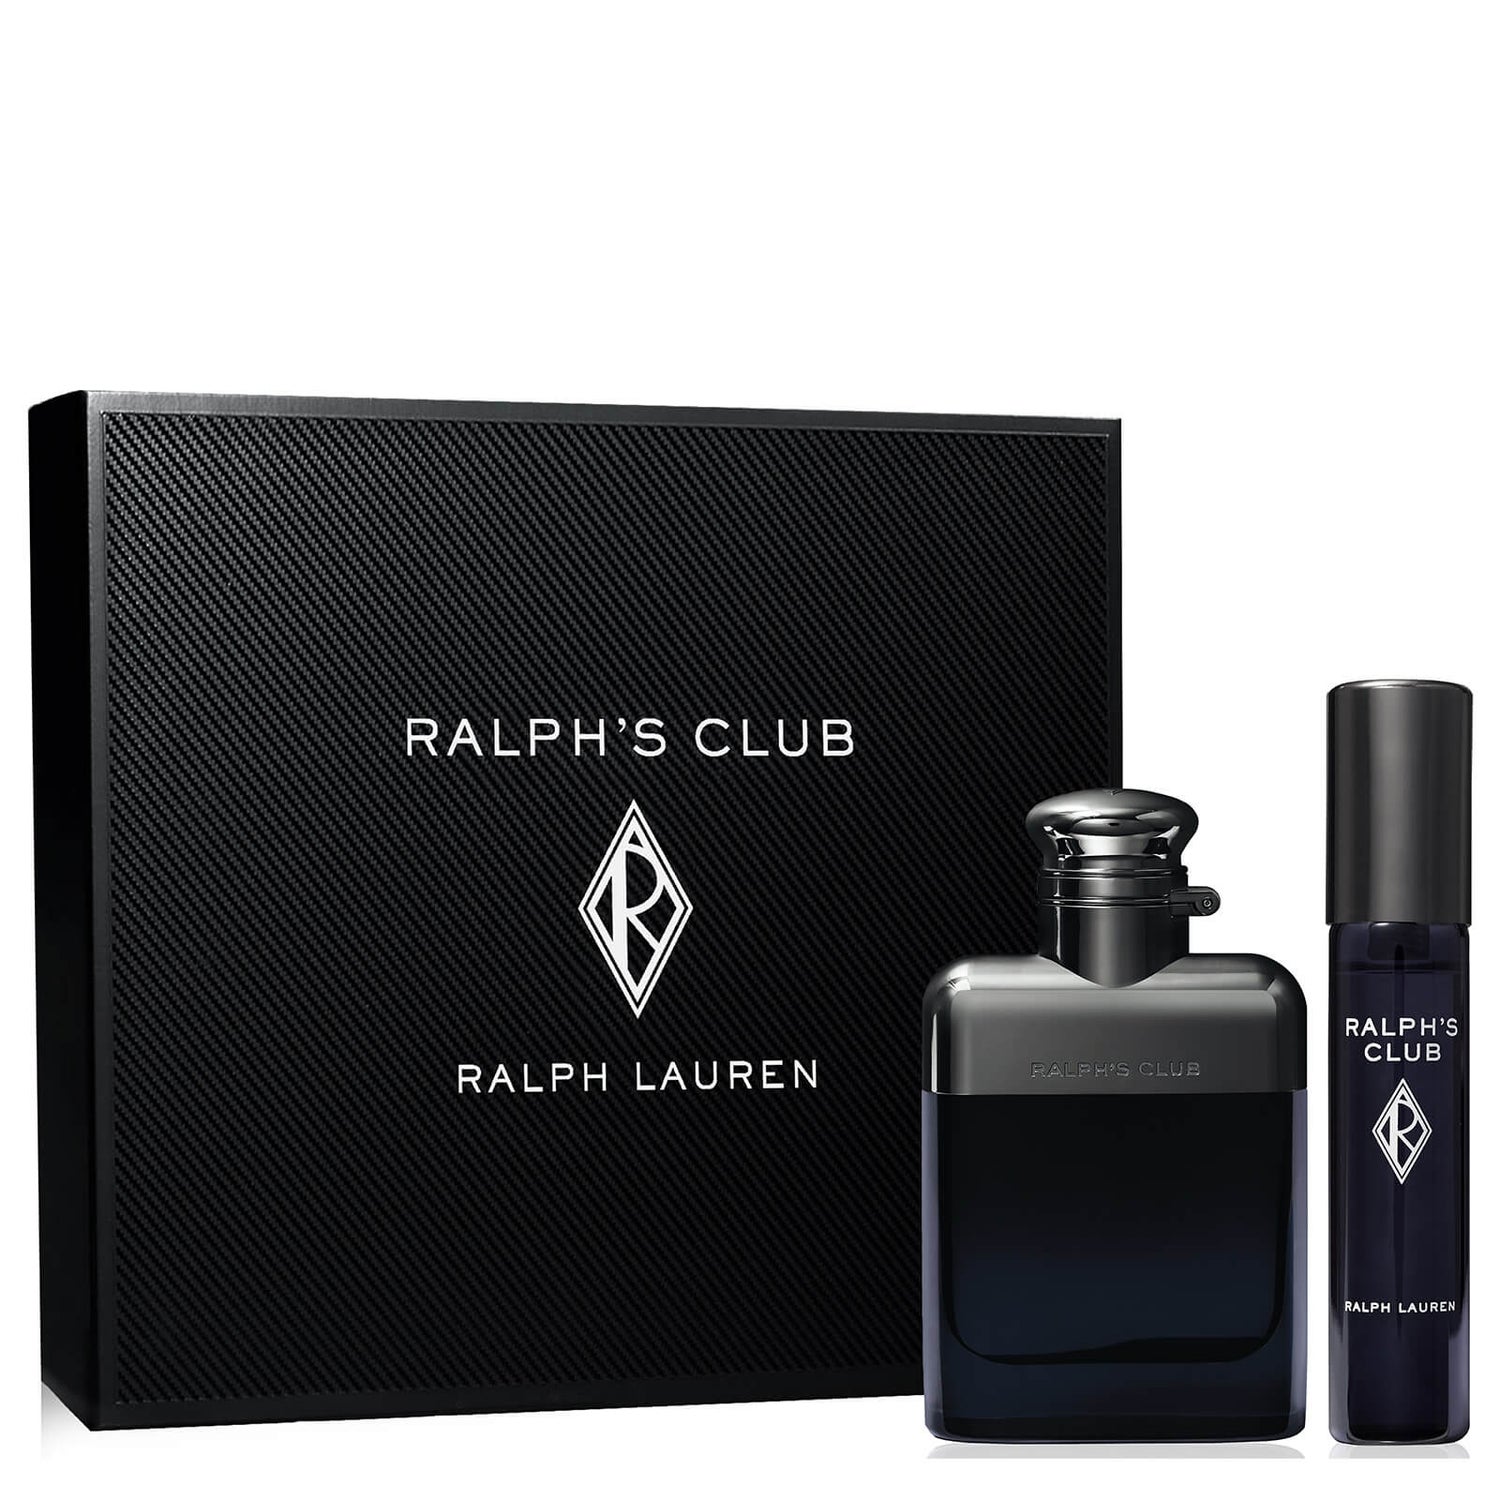 Dárková sada toaletní vody Ralph Lauren Ralph's Club 50 ml (v hodnotě £64,00)